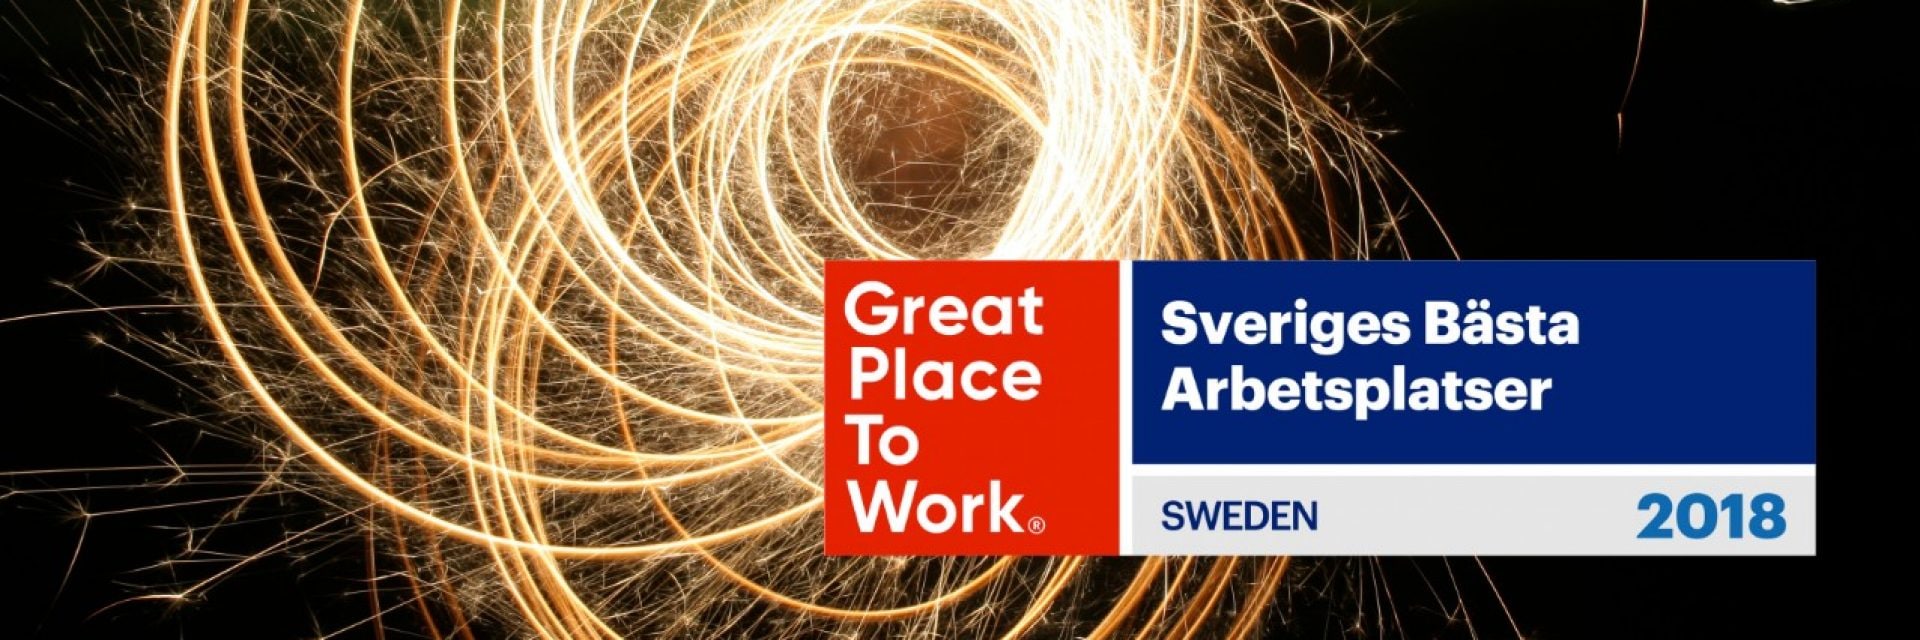 Sveriges bästa arbetsplats 2018